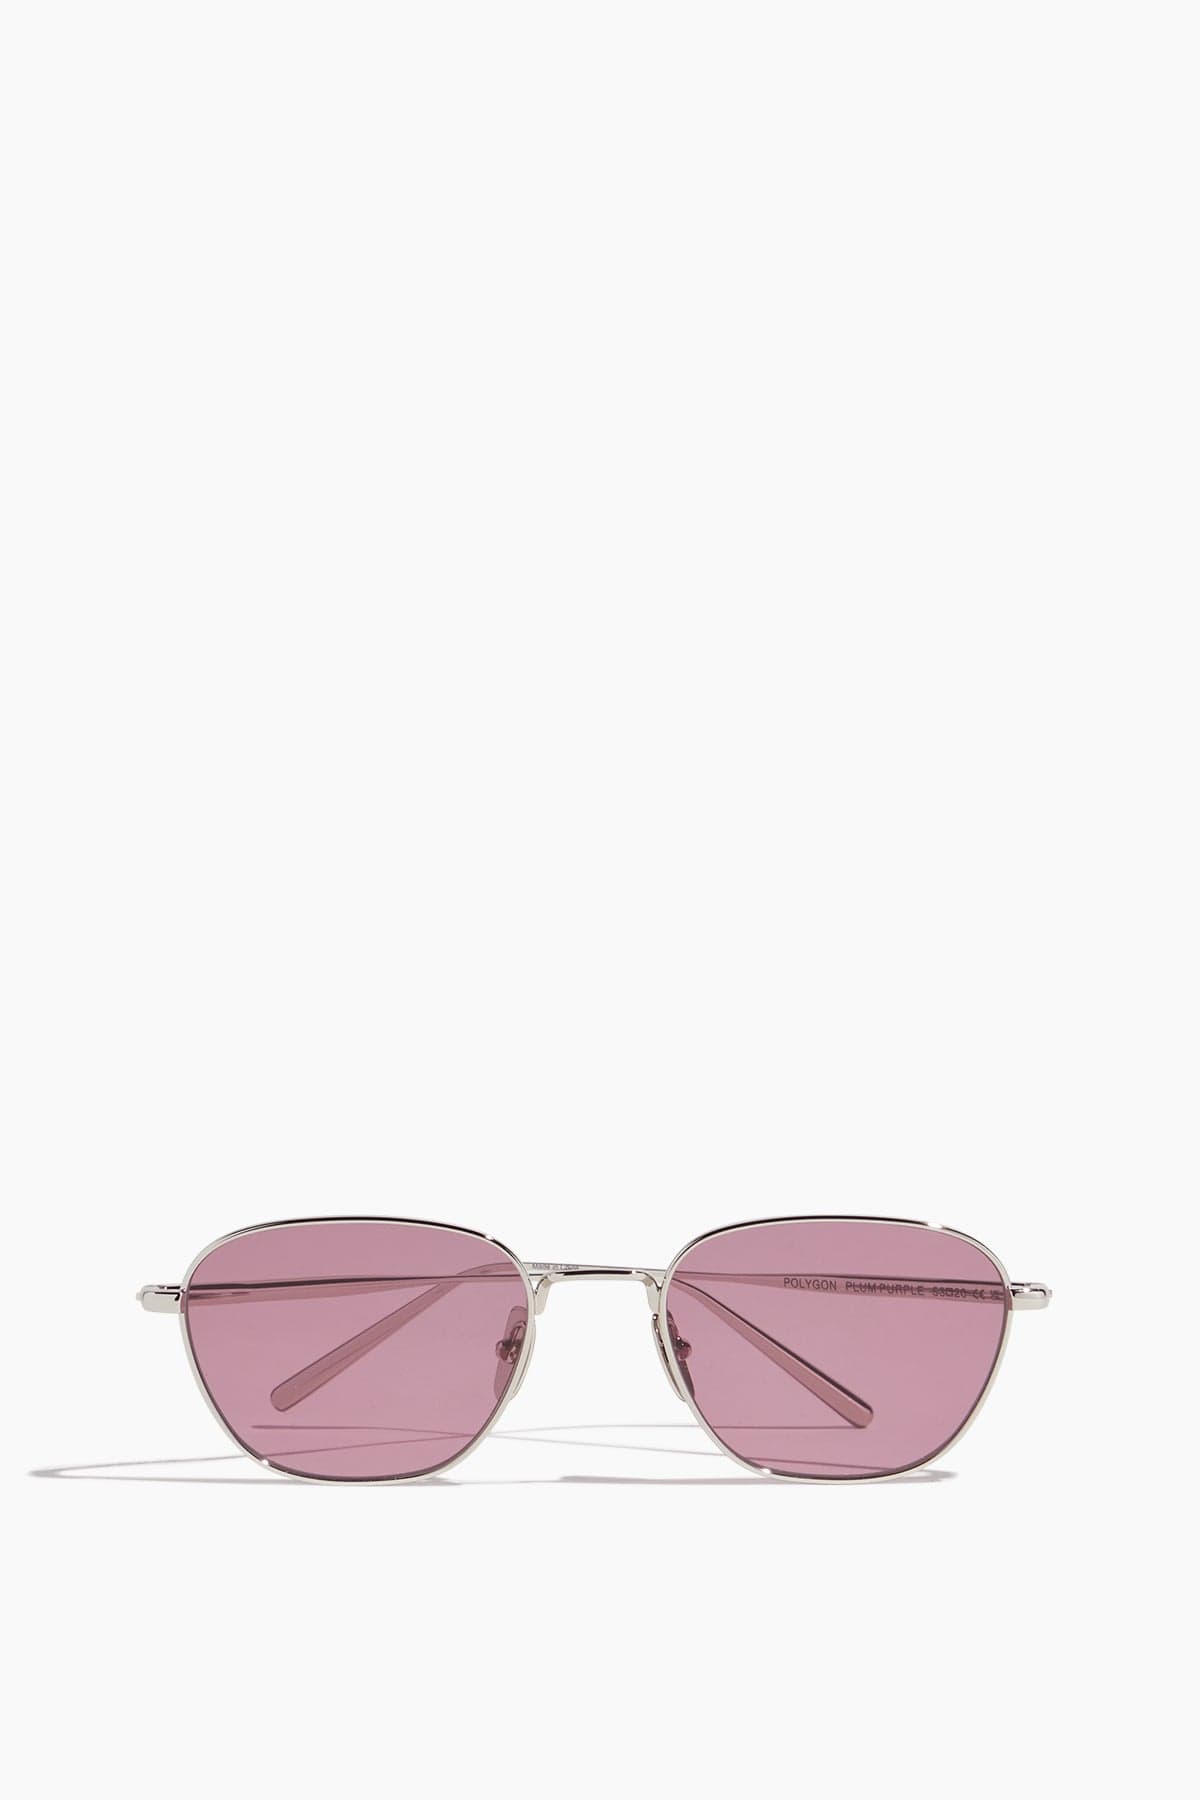 Chimi Sunglasses Sunglasses in Polygon Silver/Plum Purple